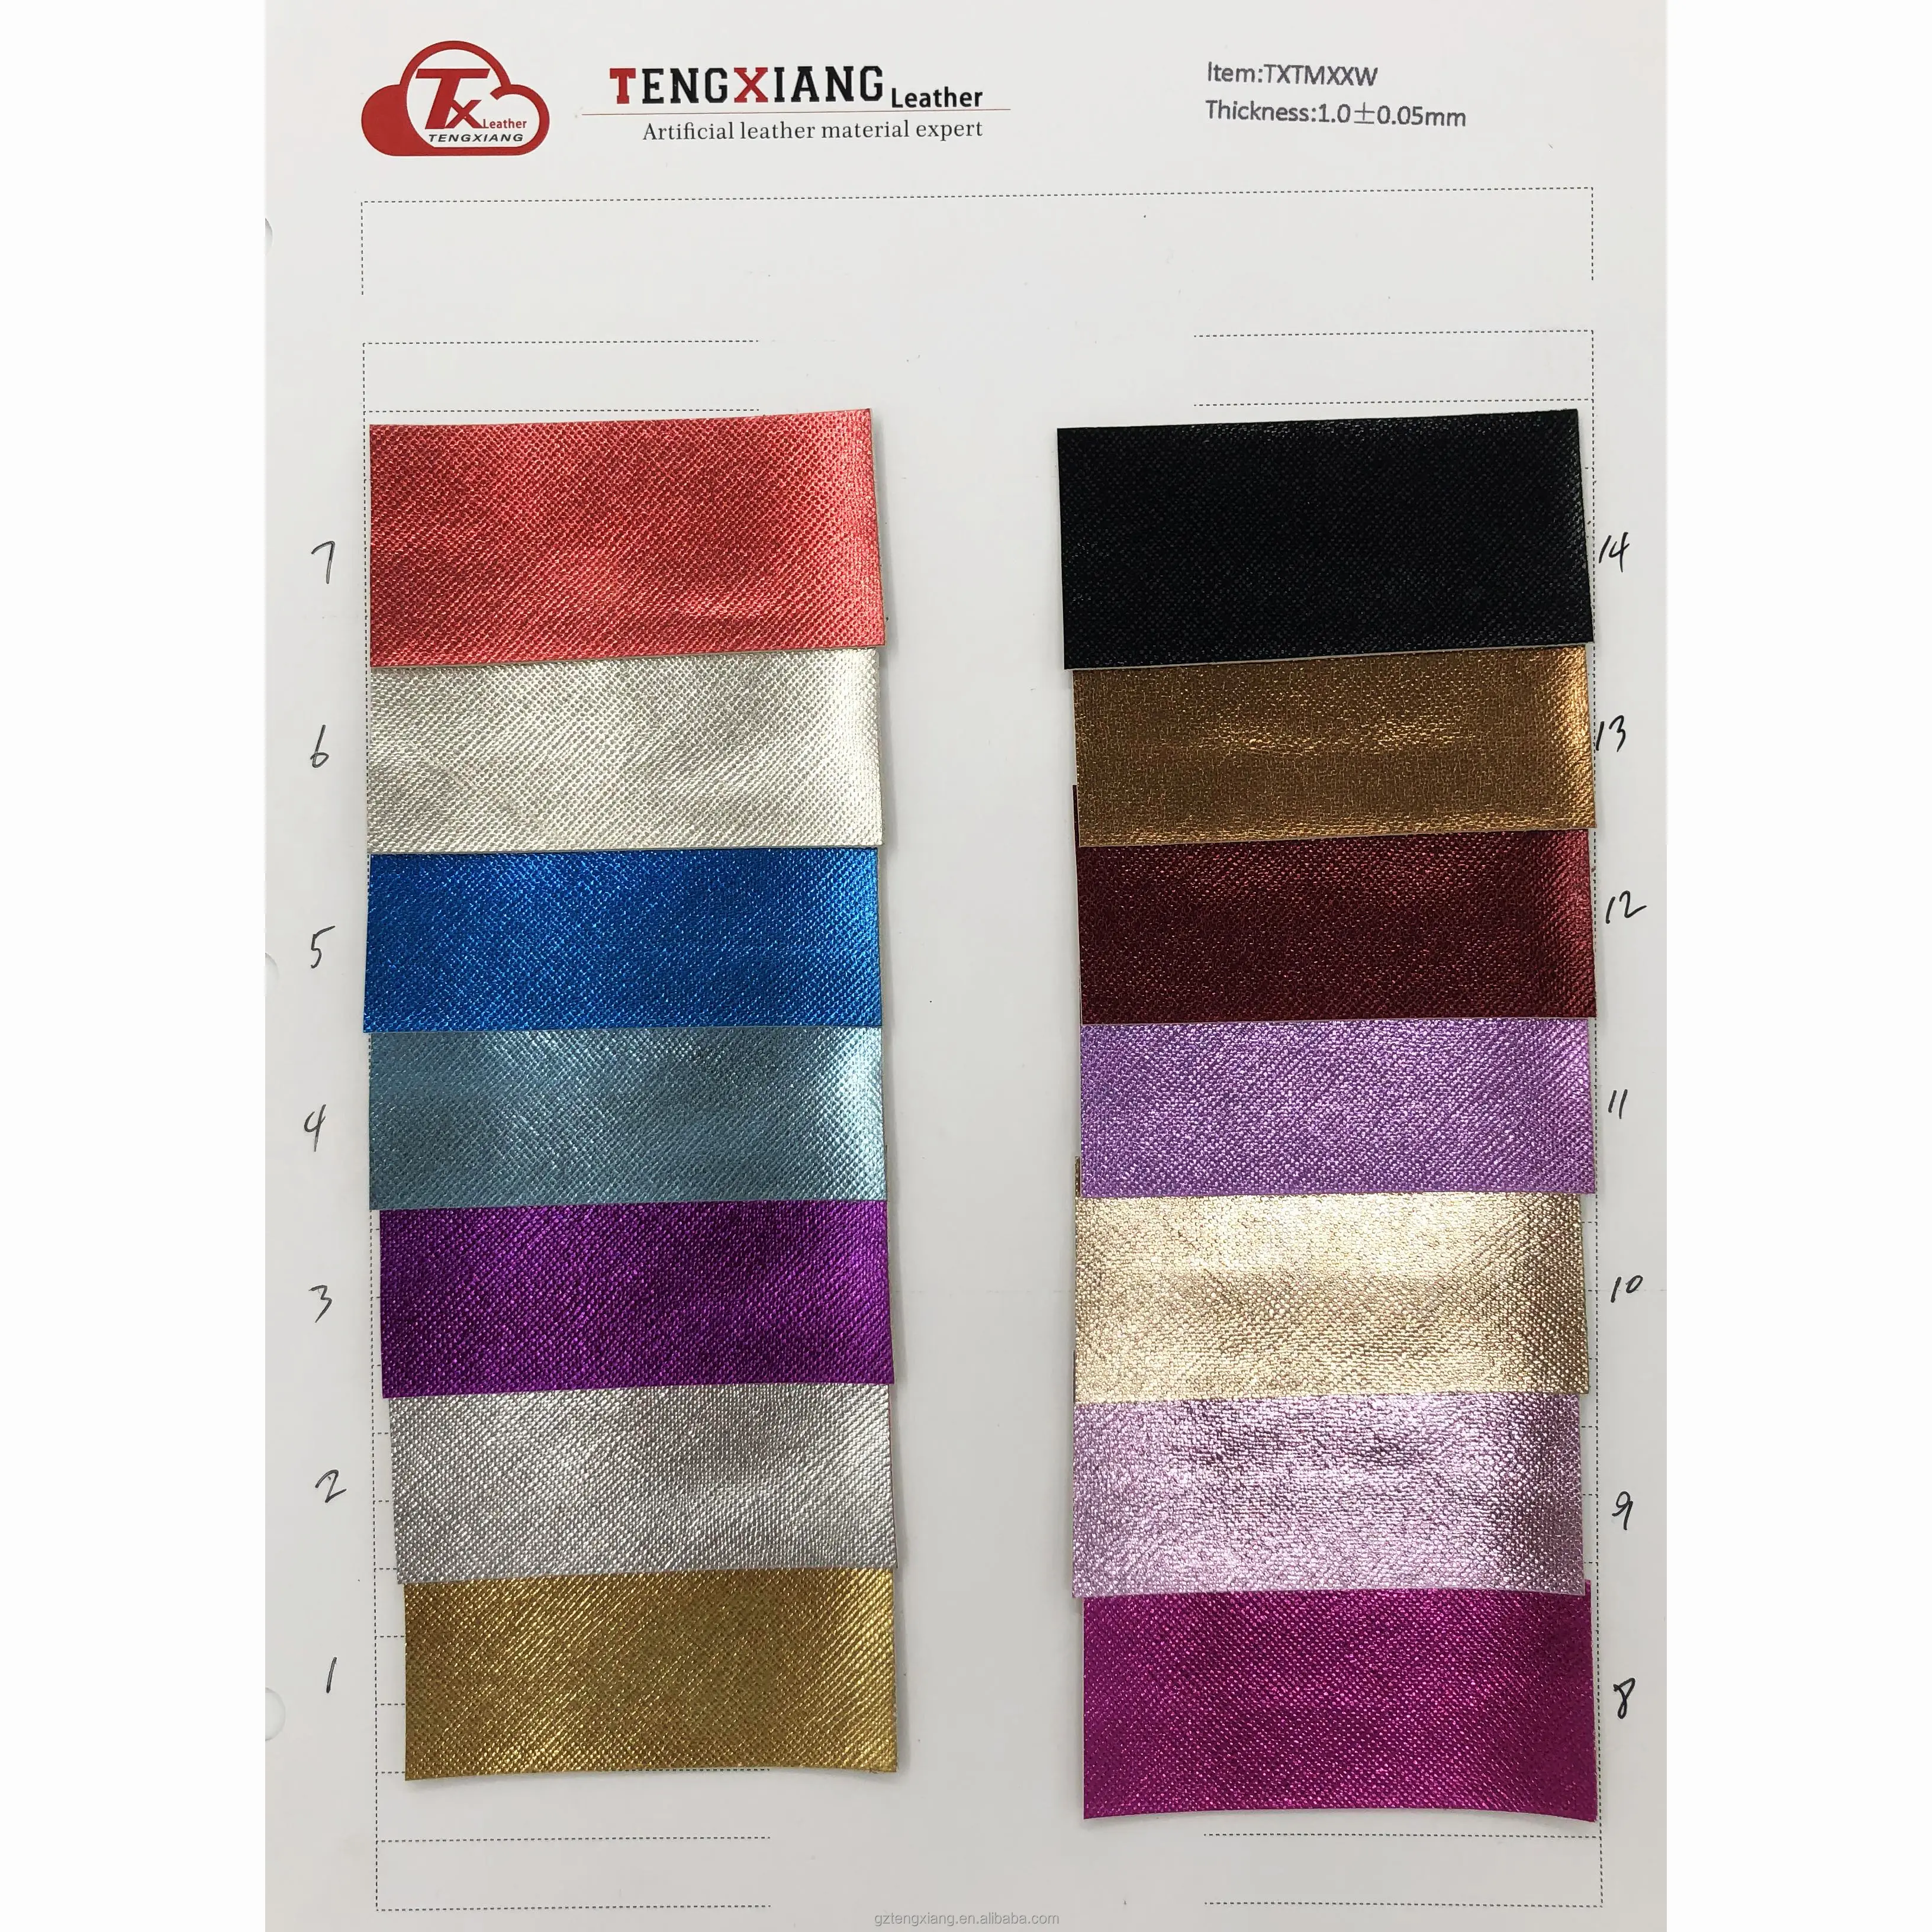 Tissu en cuir PVC cuir artificiel le film non-tissé tissu palm print film métallique 1.0mm peut être utilisé pour fabriquer des sacs et des chaussures